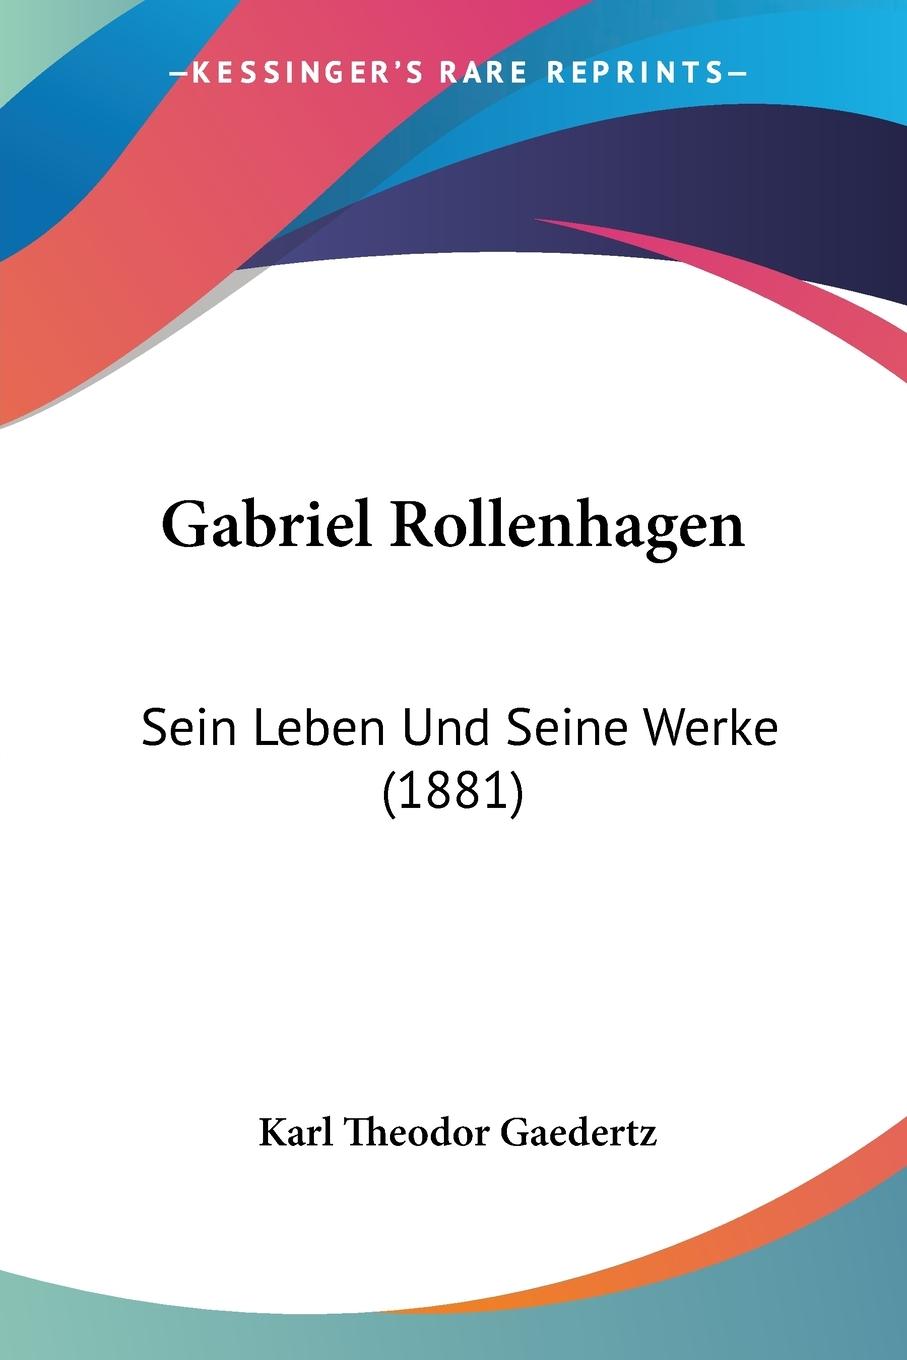 Gabriel Rollenhagen - Gaedertz, Karl Theodor